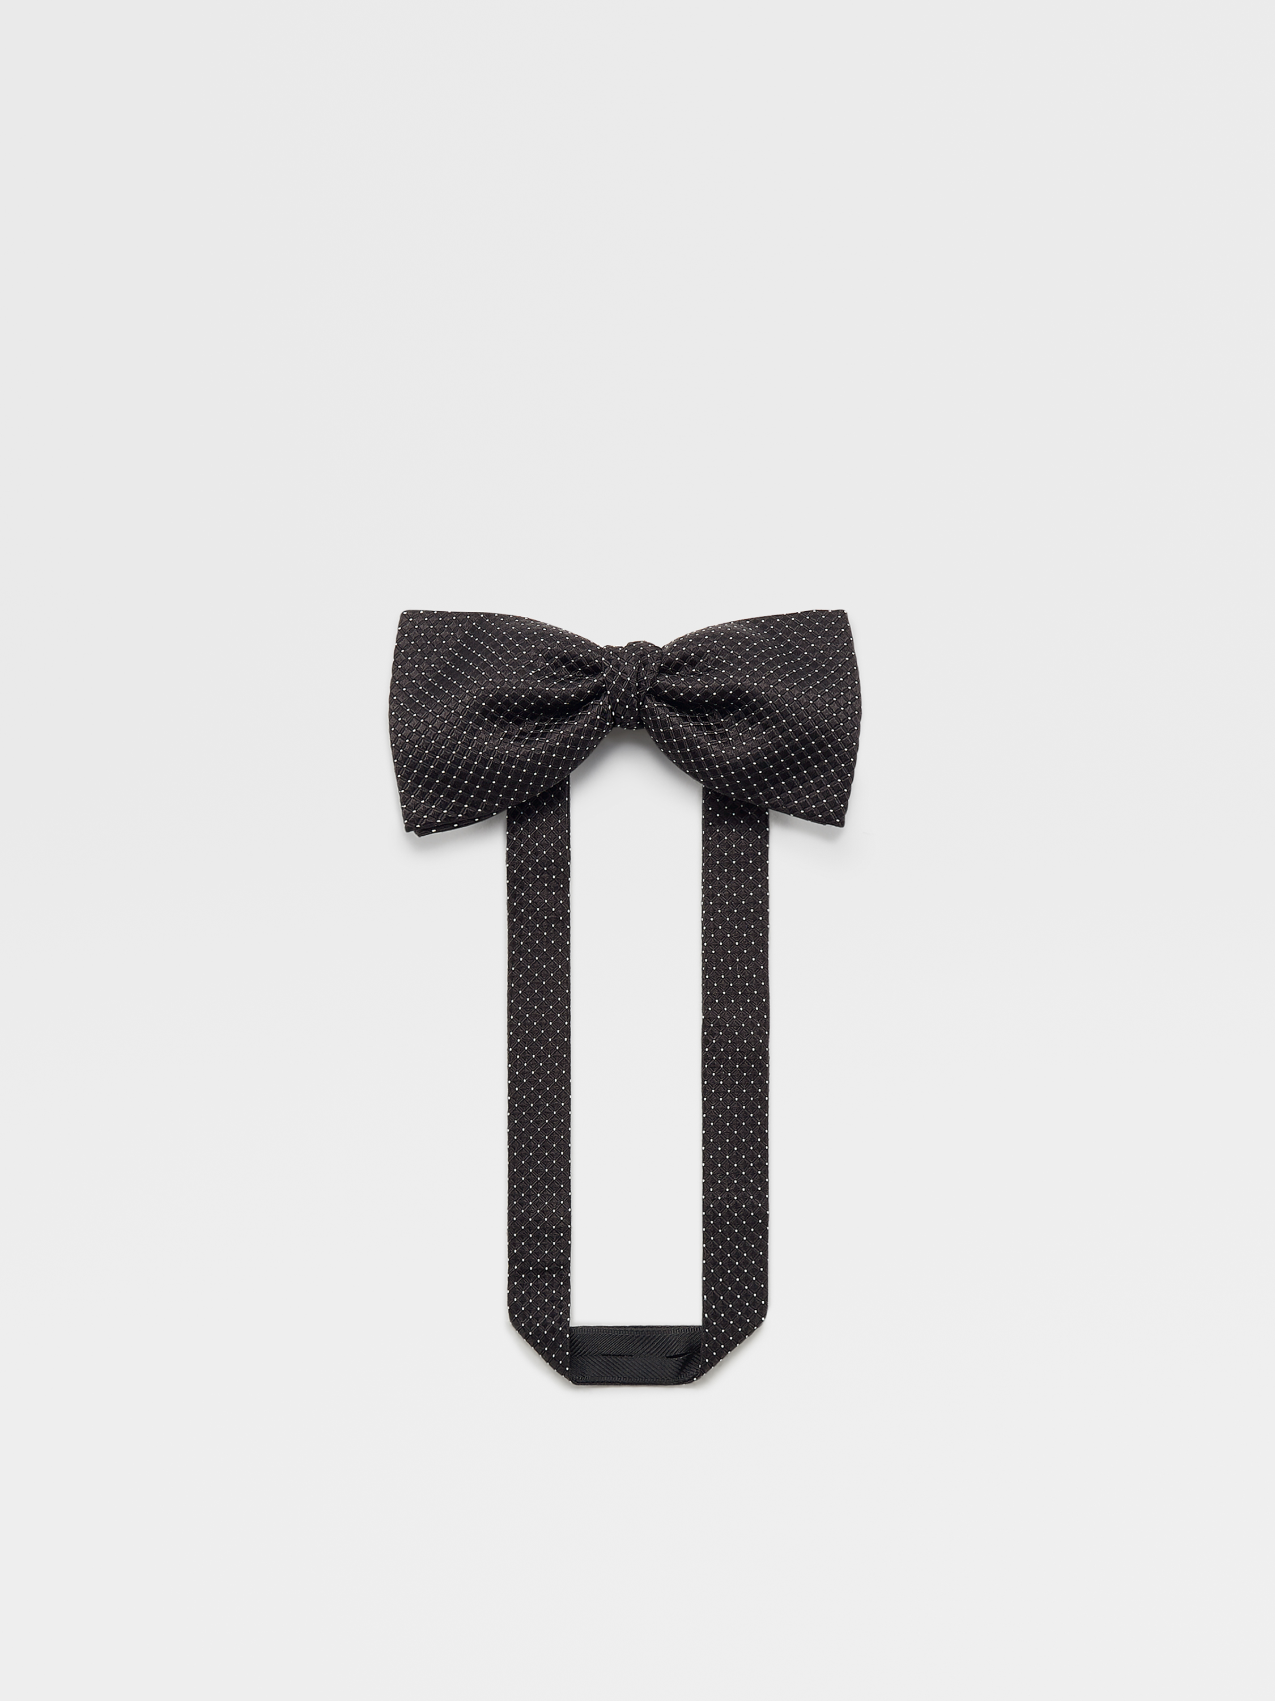 Matte Black Silk Bow Tie